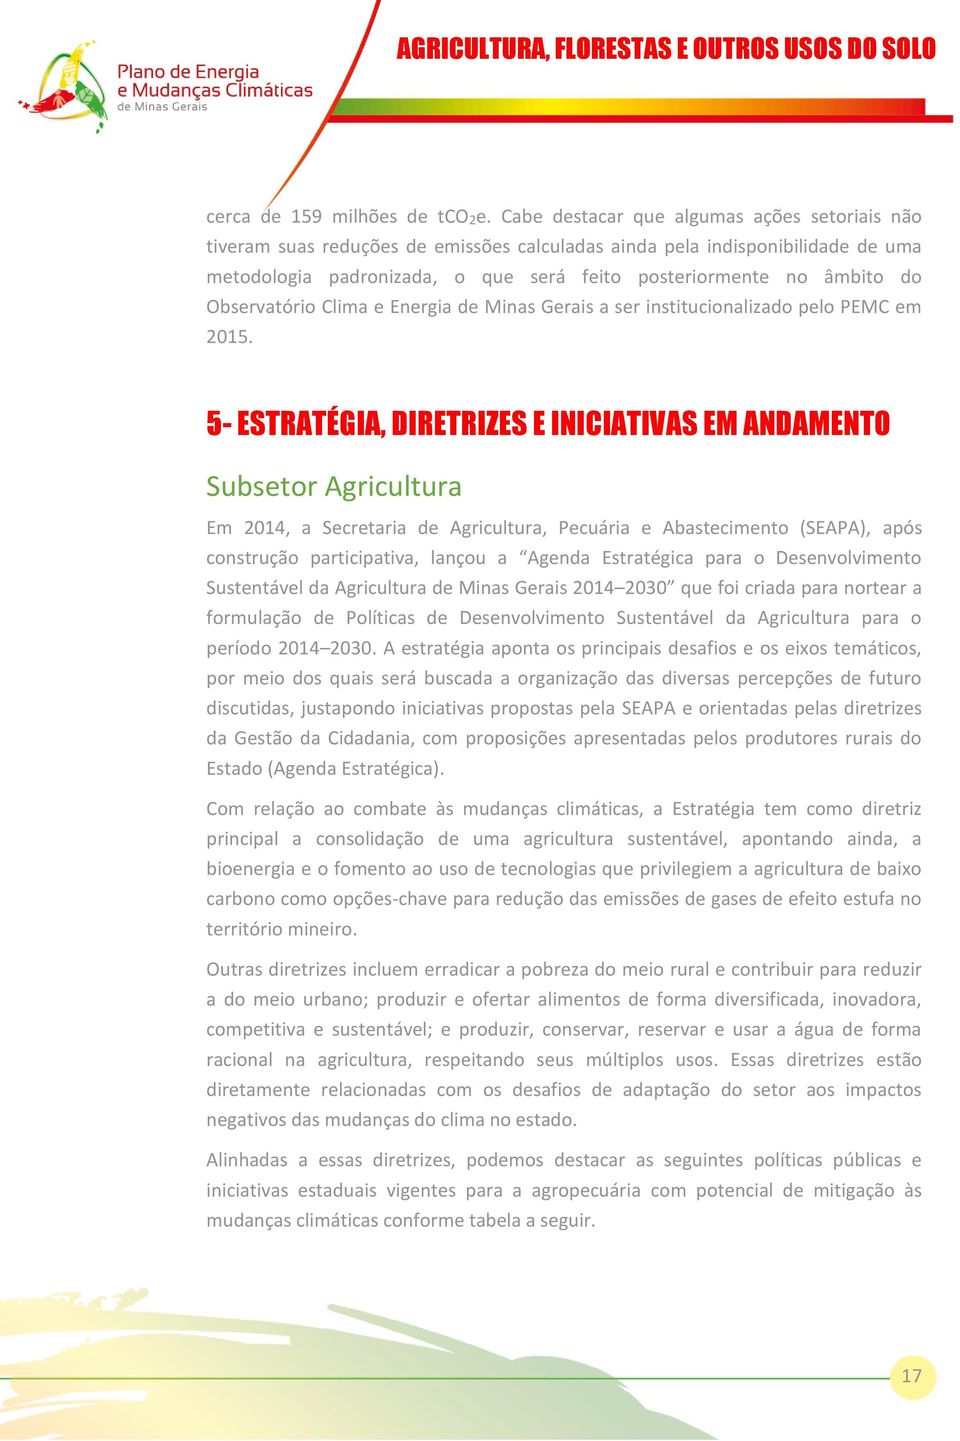 Observatório Clima e Energia de Minas Gerais a ser institucionalizado pelo PEMC em 2015.